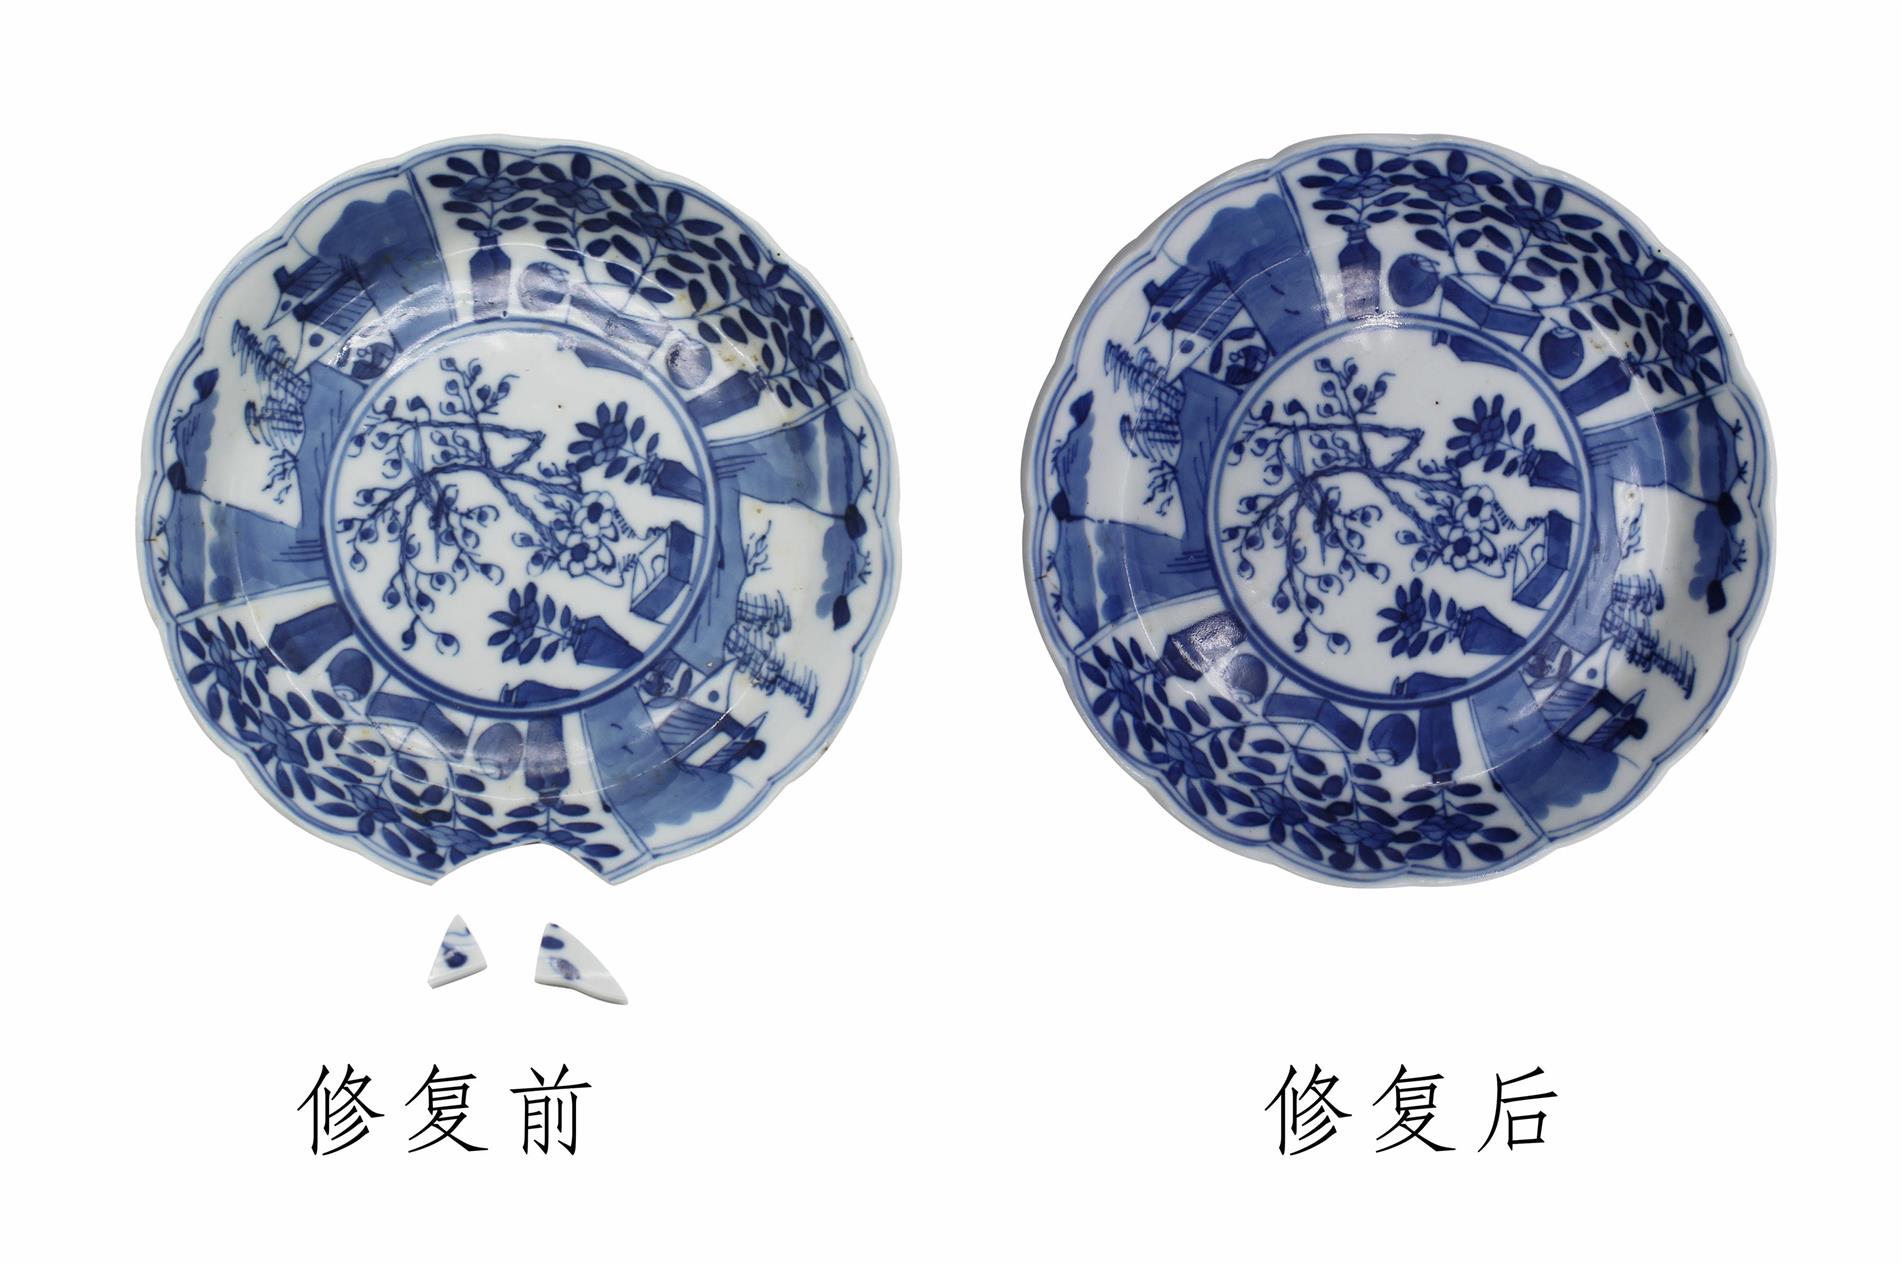 专业陶瓷修复机构找广州弘粹文化修复中心